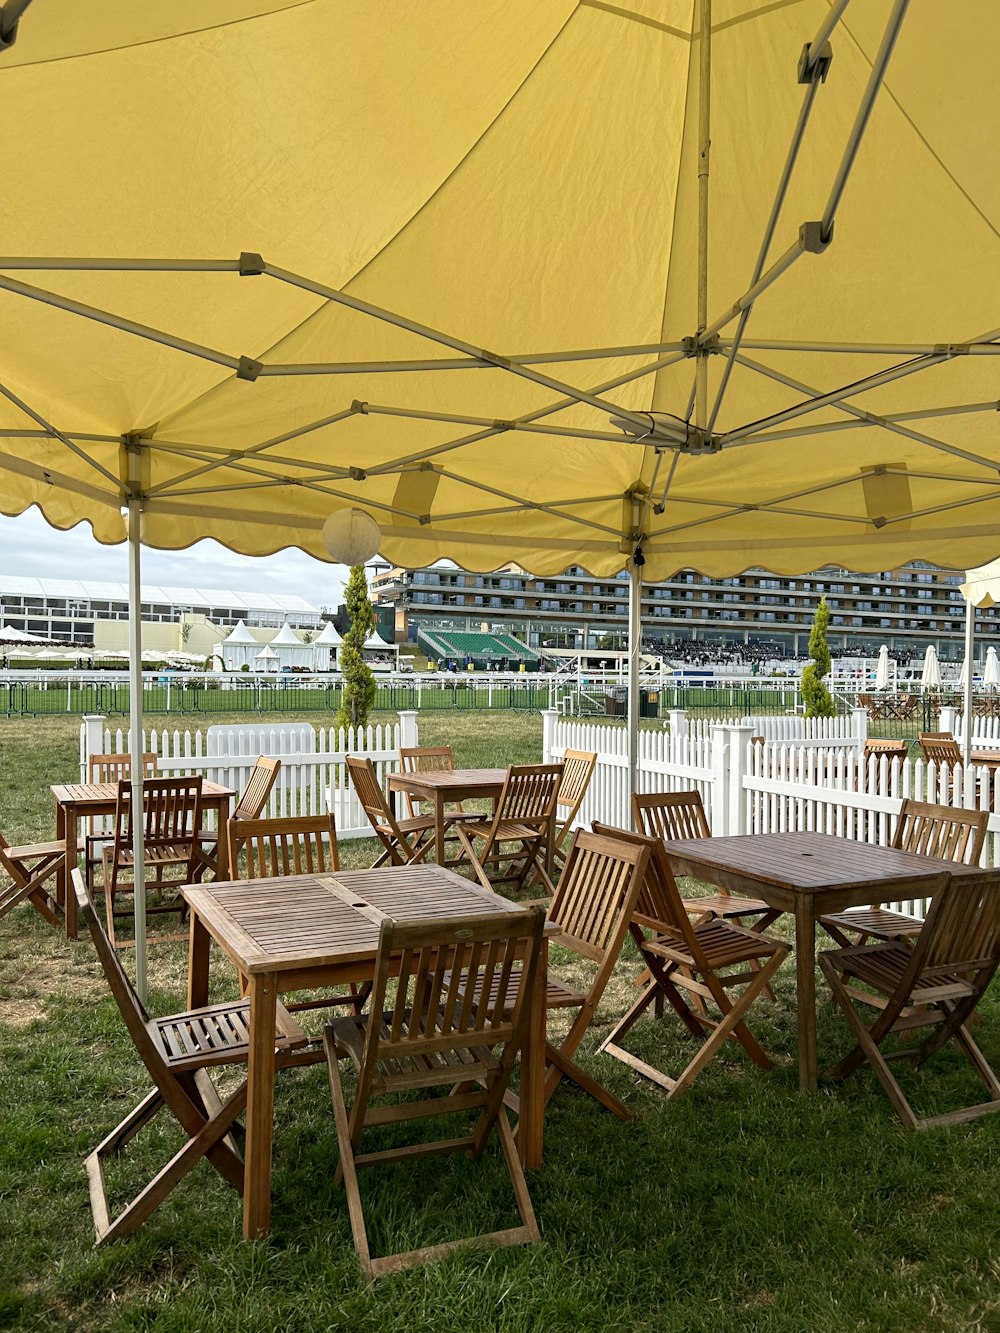 Un grupo de mesas y sillas de madera bajo una sombrilla amarilla